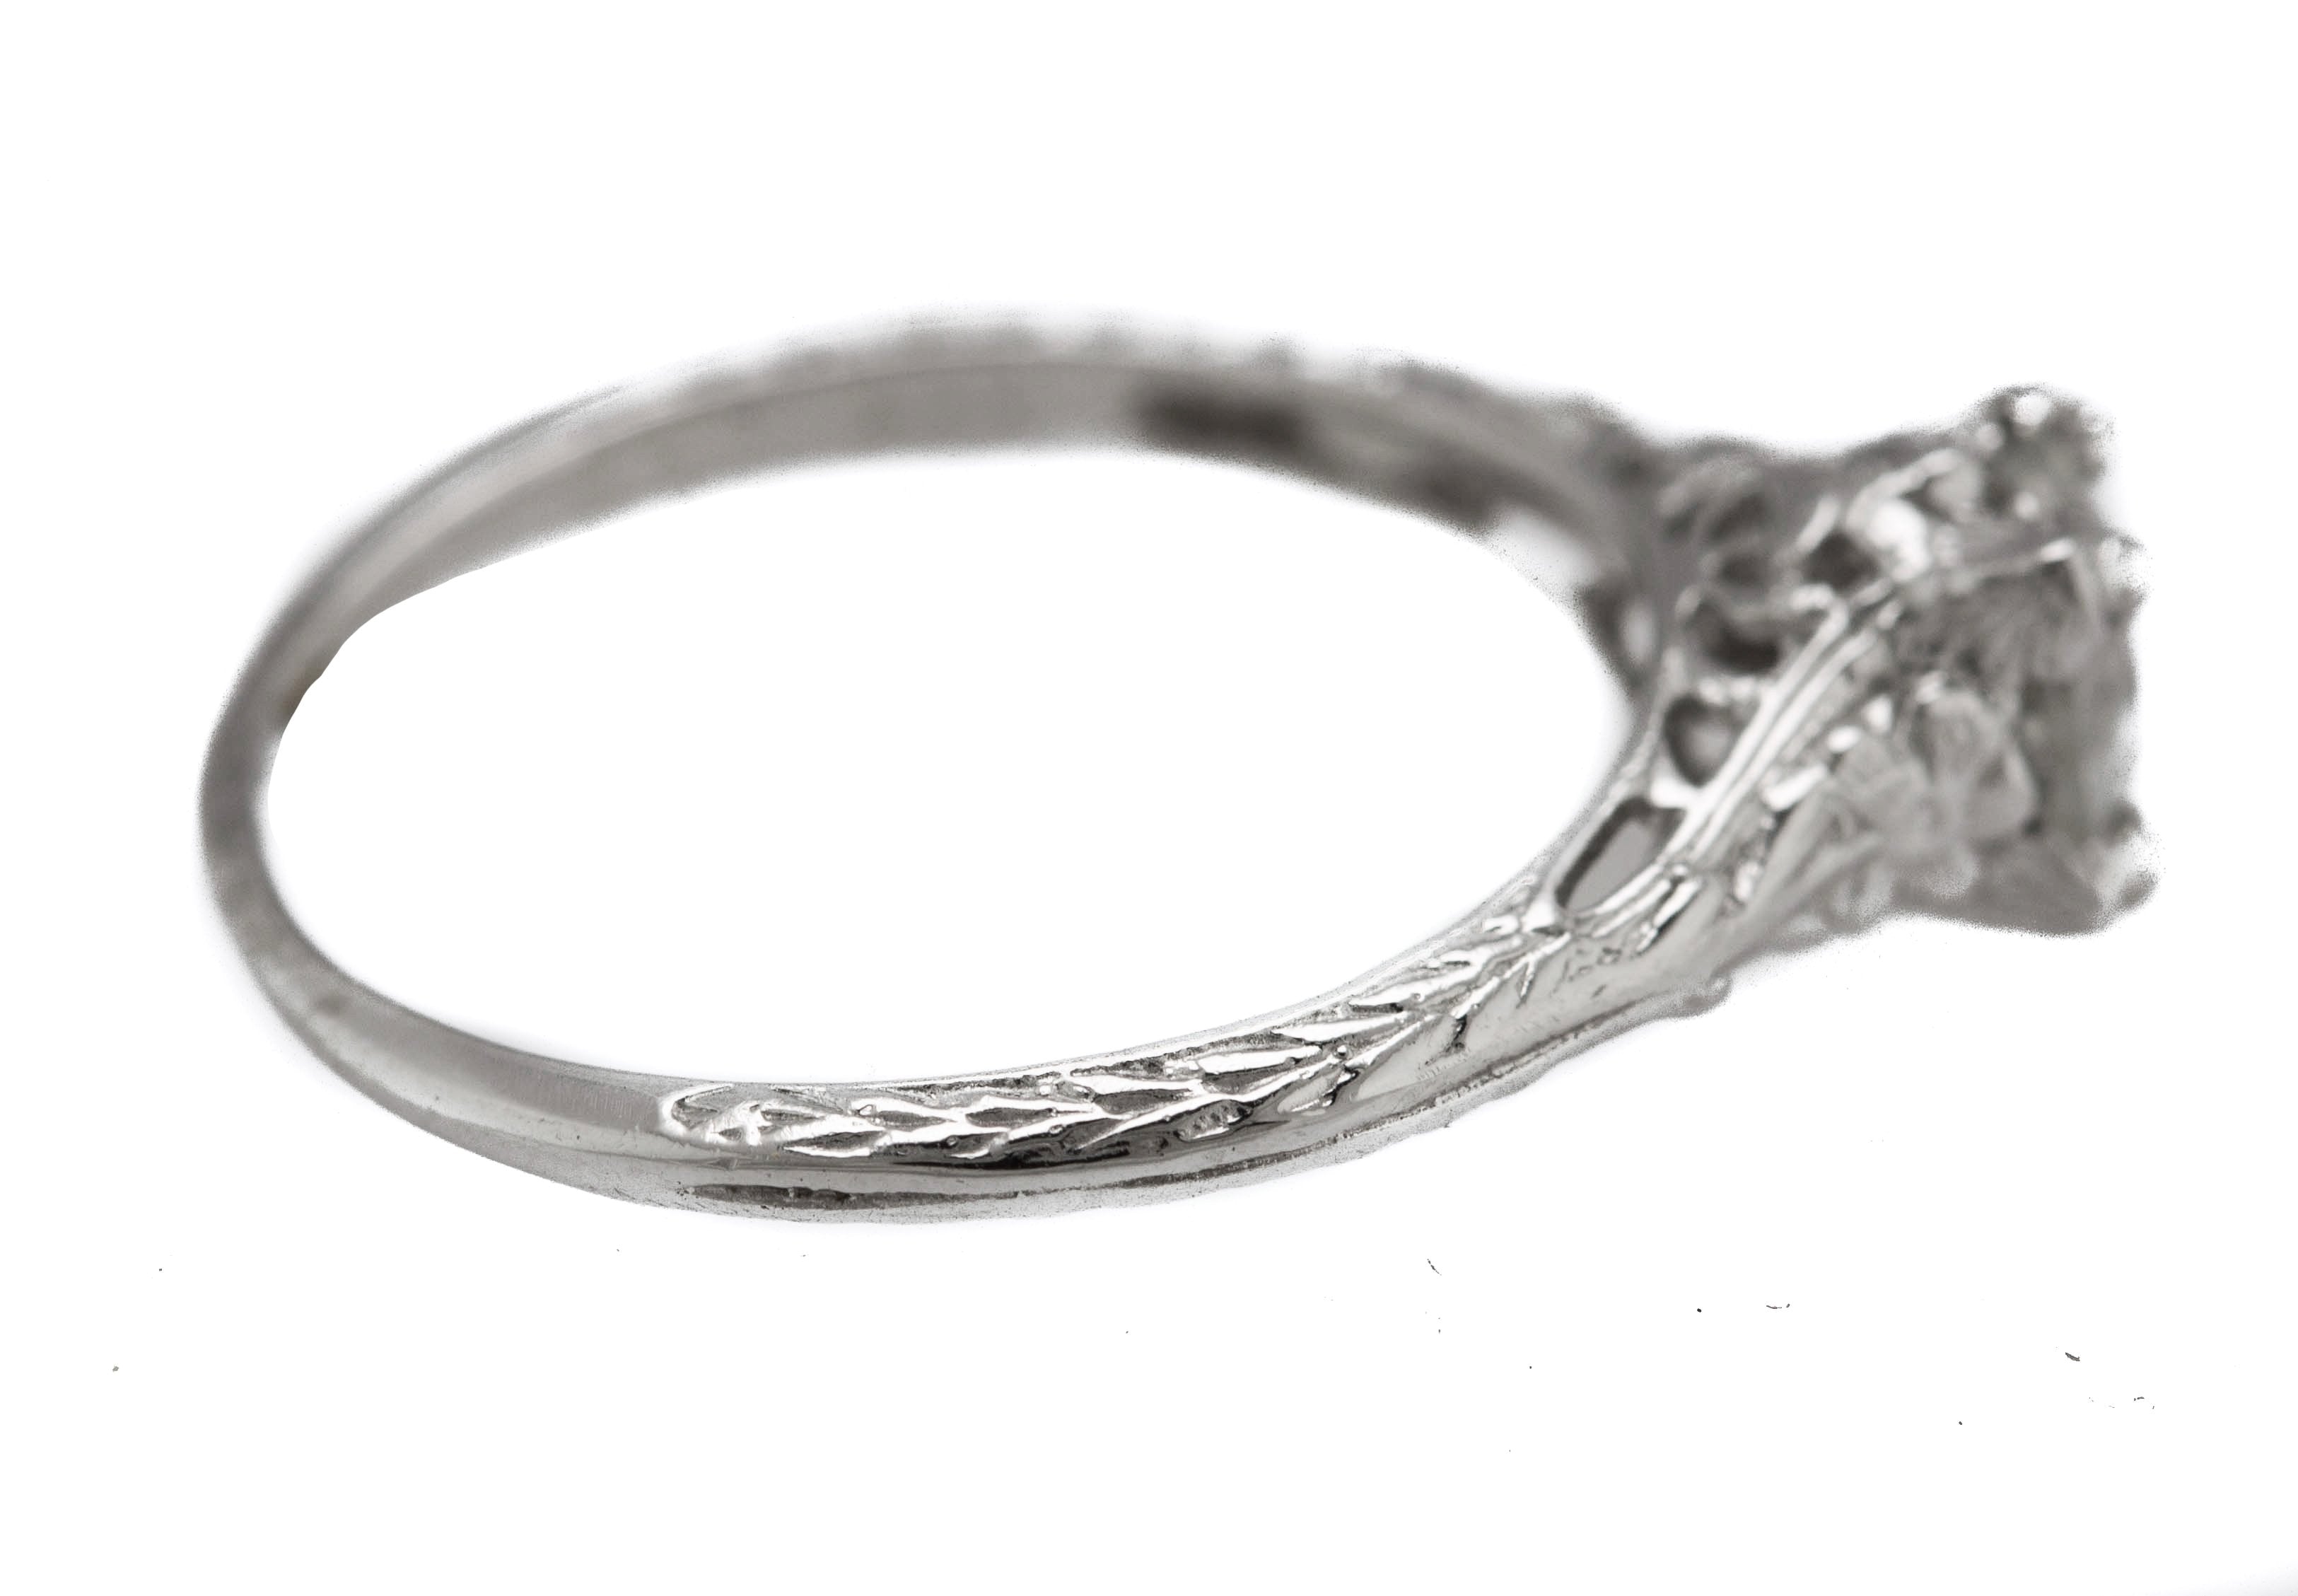 Ladies Platinum 0.71ct H-I I1 Old European Cut Diamond Solitaire Engagement Ring